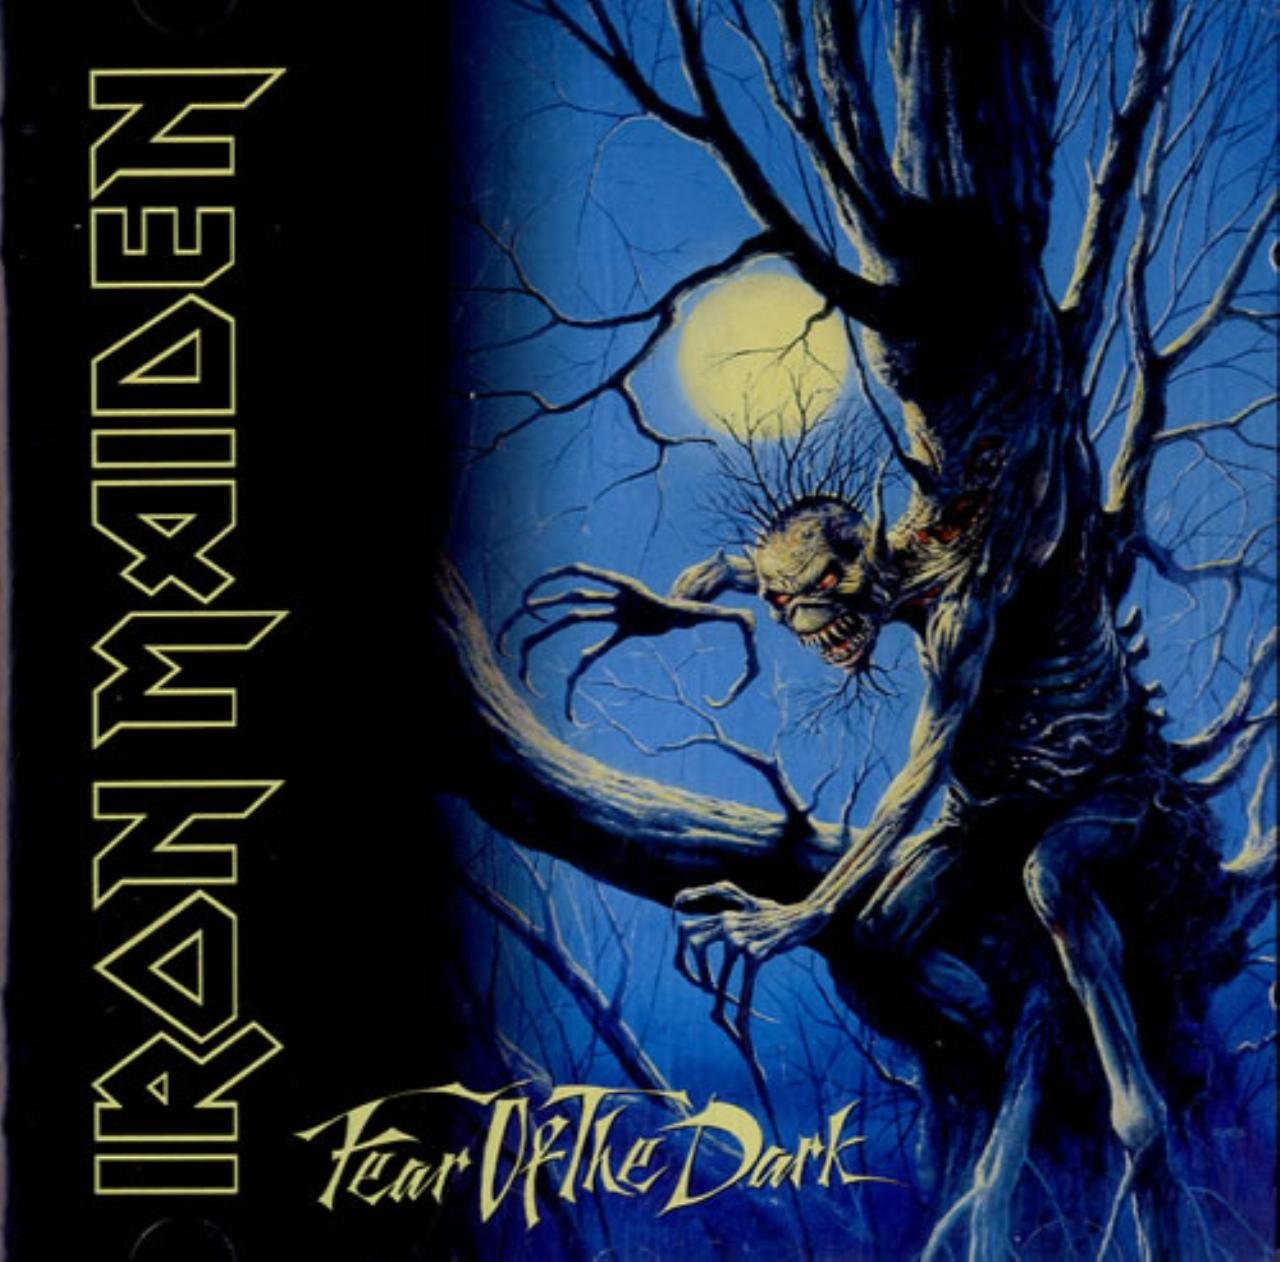 Iron Maiden "Fear Of The Dark" 2x12" Vinyl